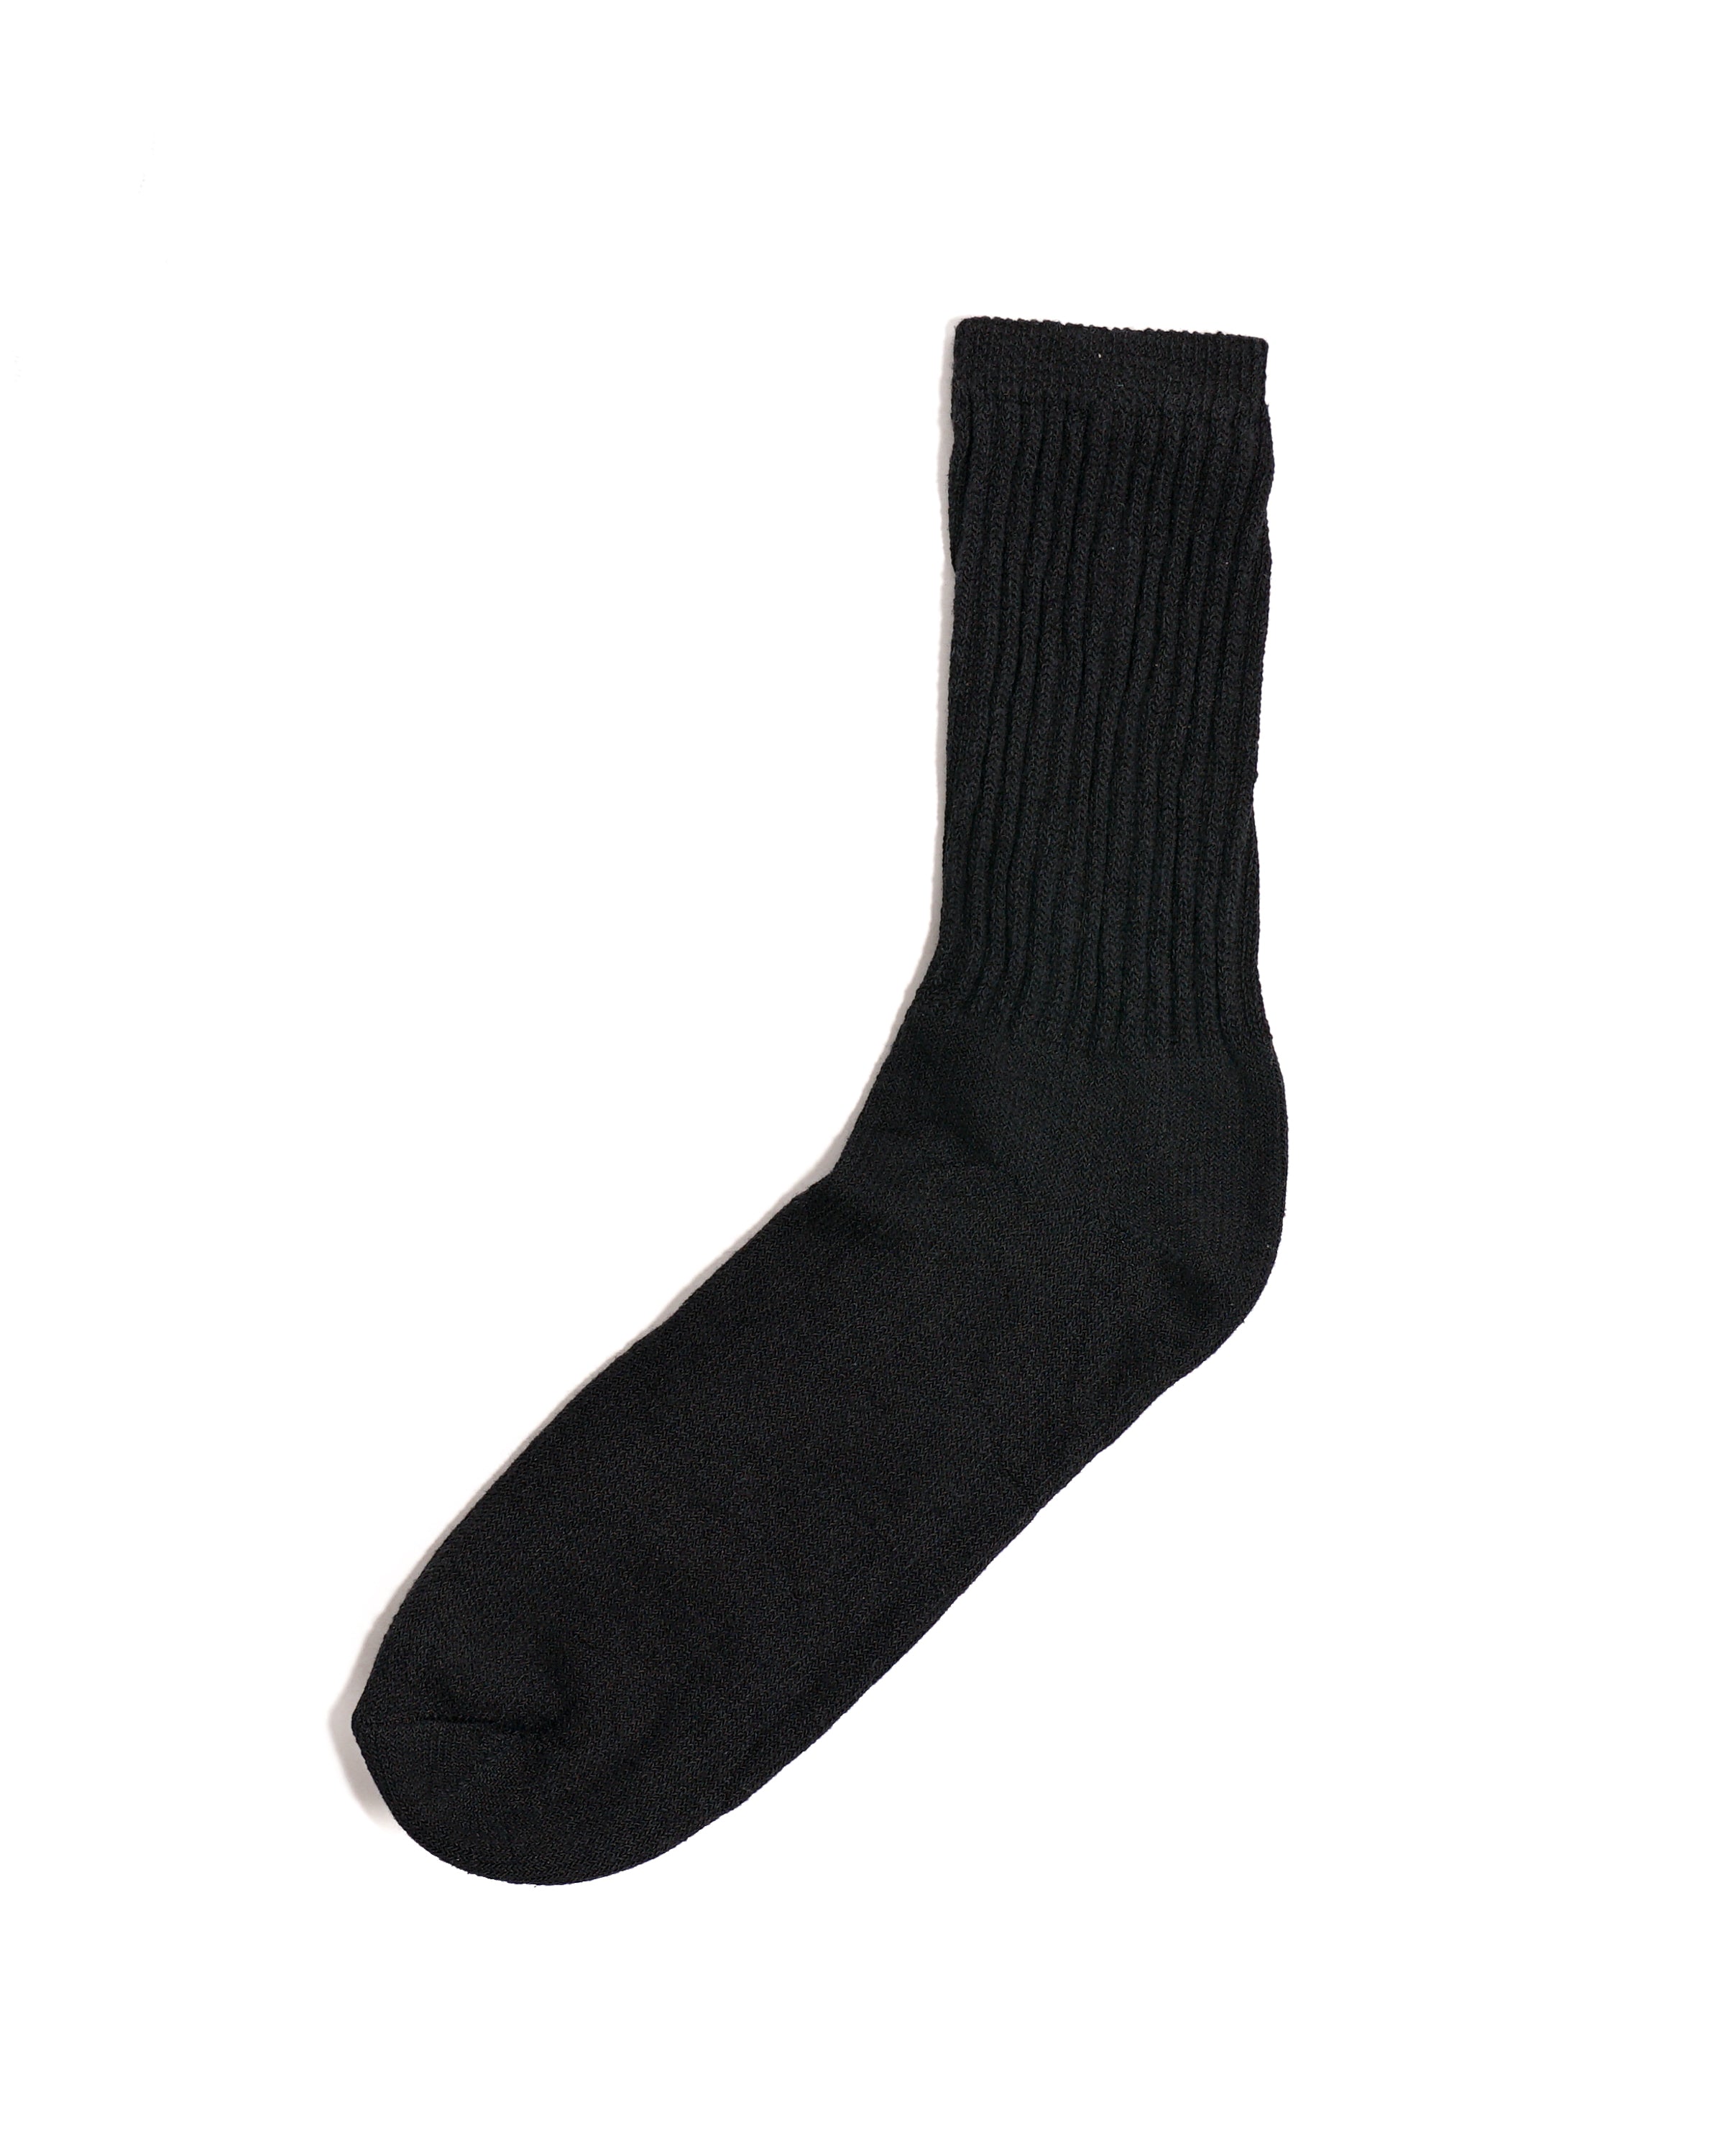 6 Pack Crew Boot Sock - Black/Grey